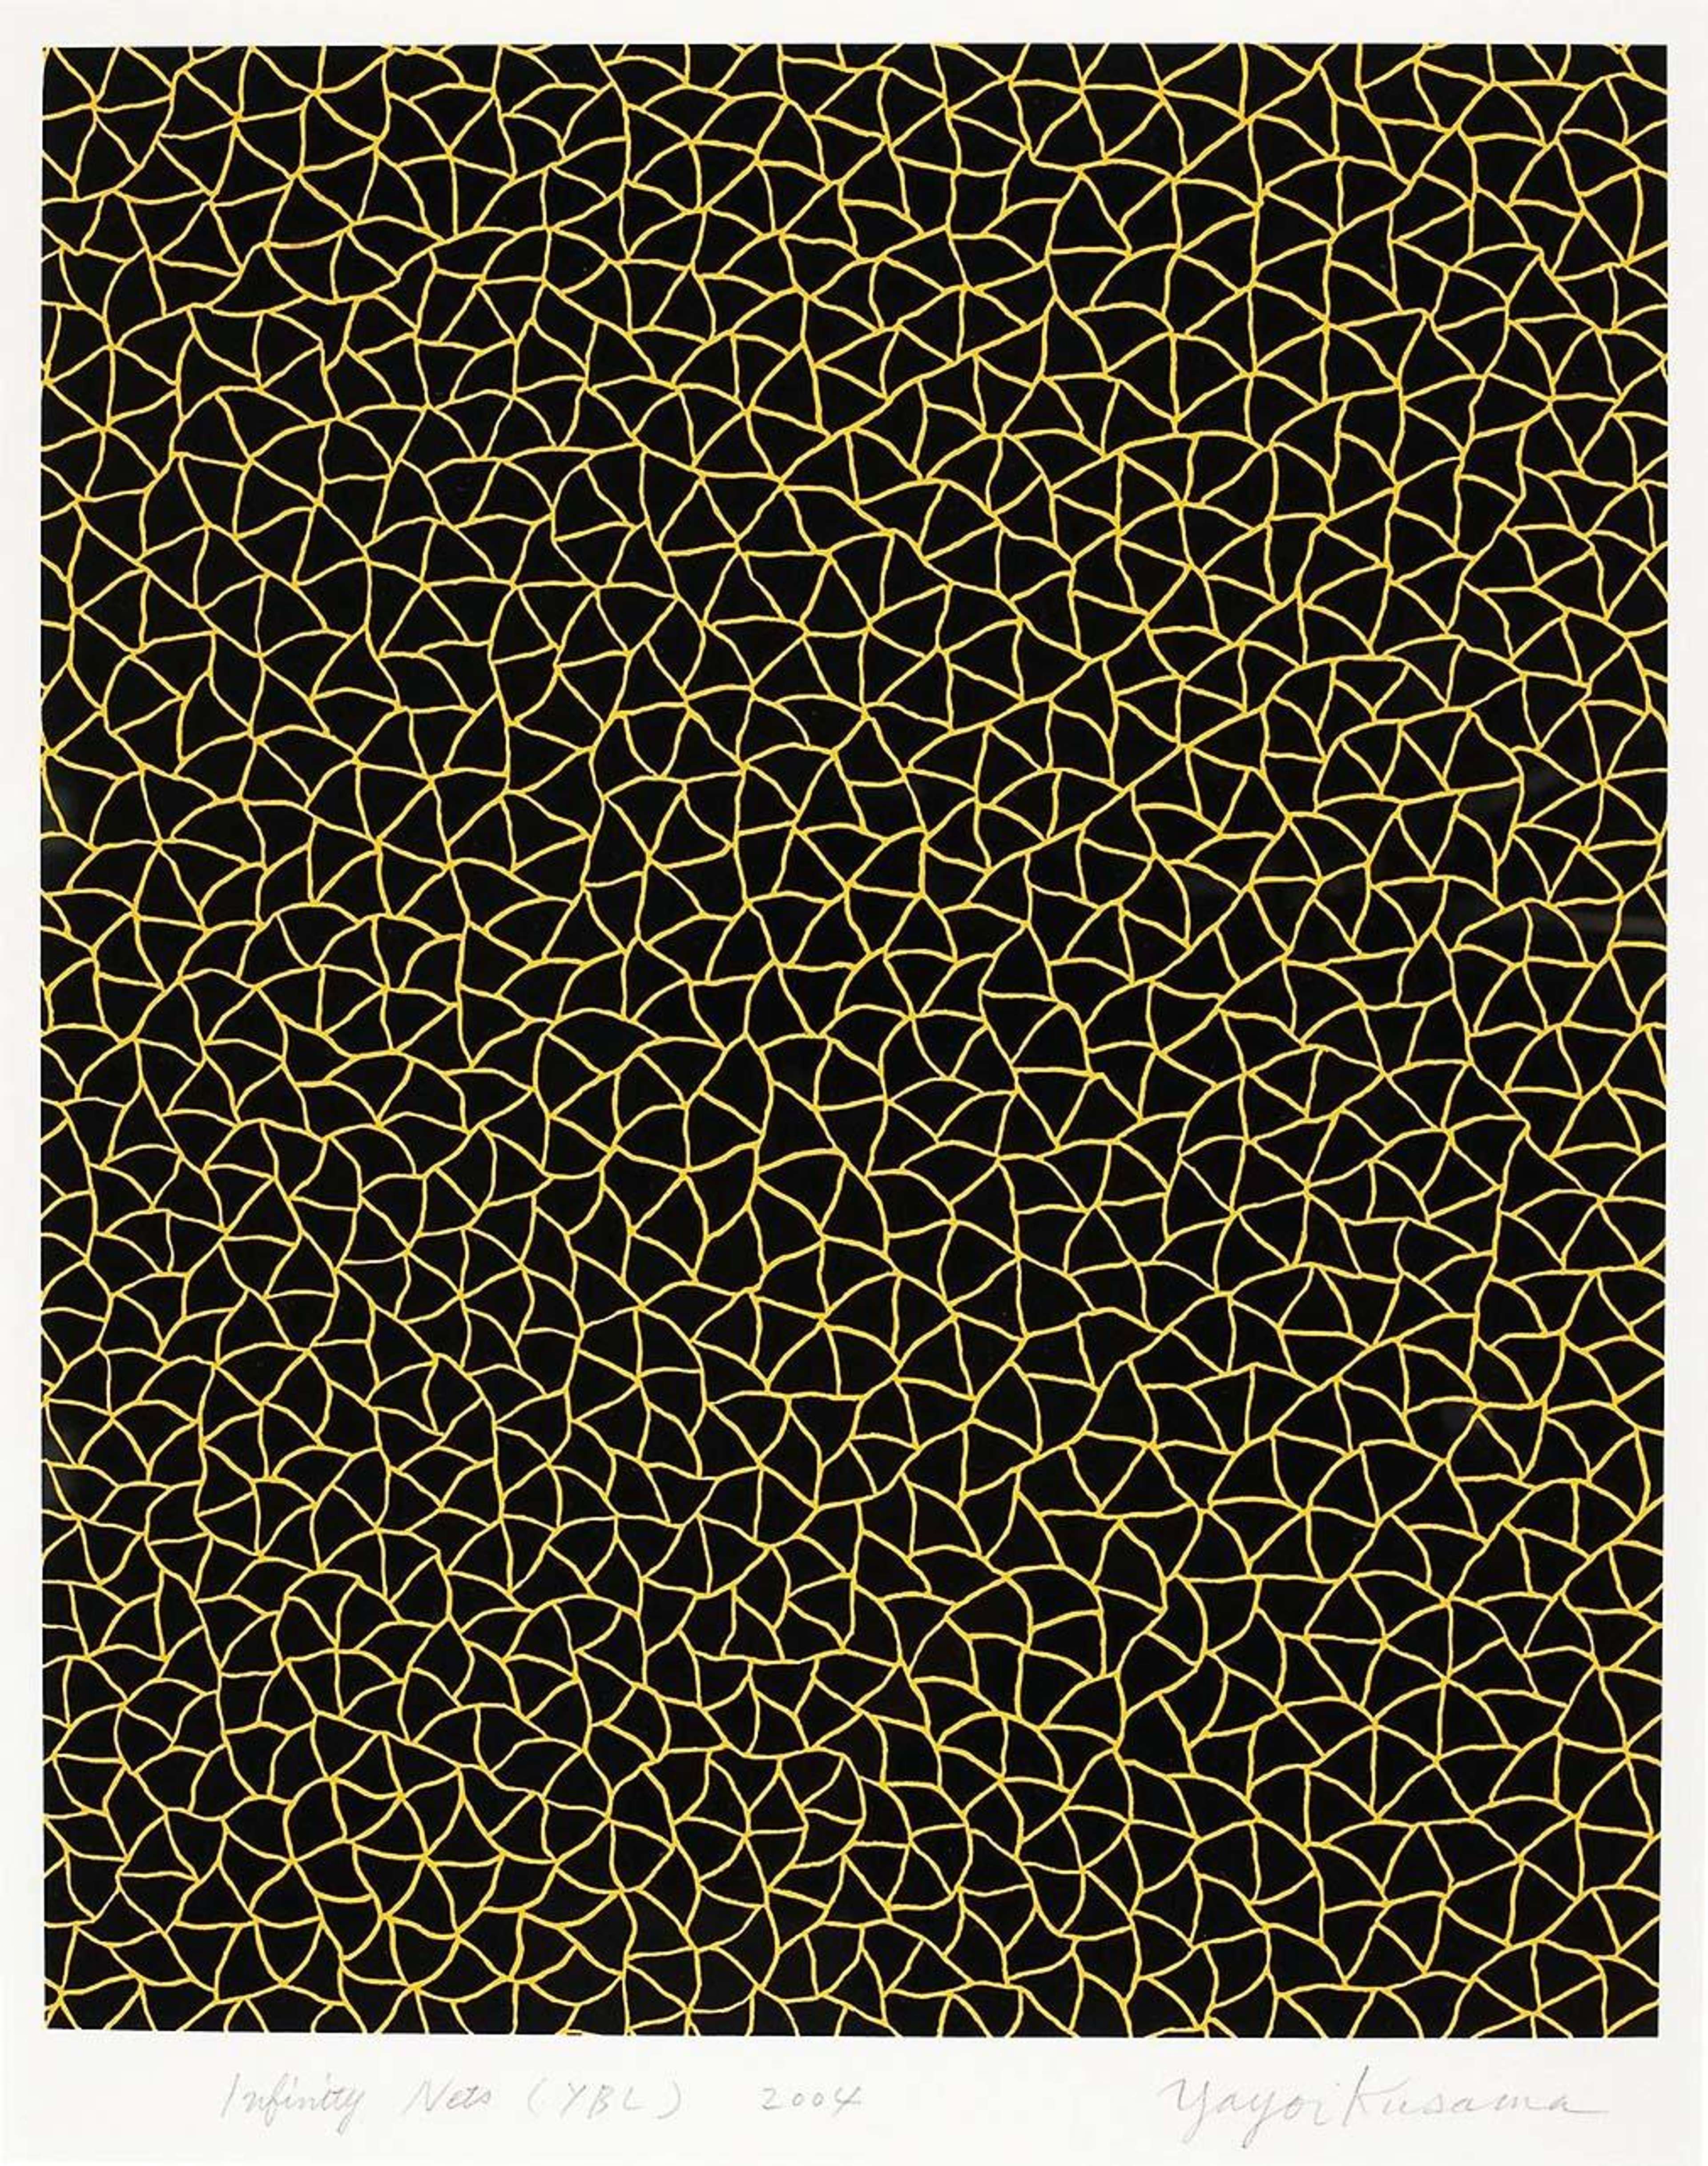 Yayomi Kusama's Infinity Nets (YBL). A lithographic print of a yellow, geometric pattern over a black background. 